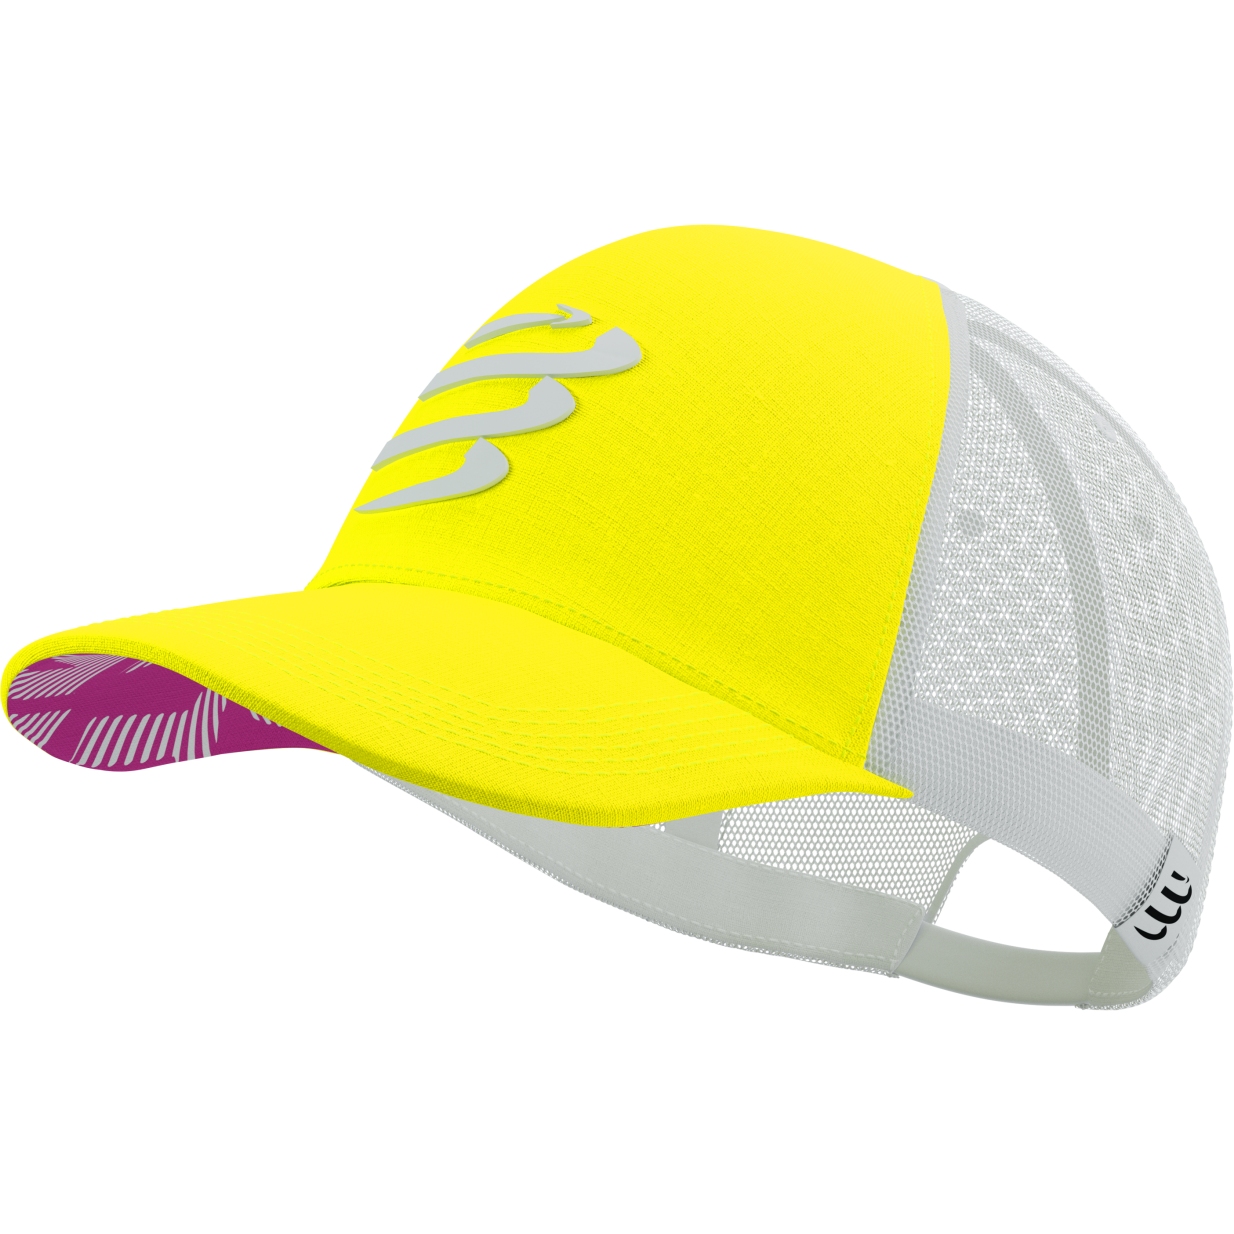 Produktbild von Compressport Trucker Cap - white/safety yellow/neon pink